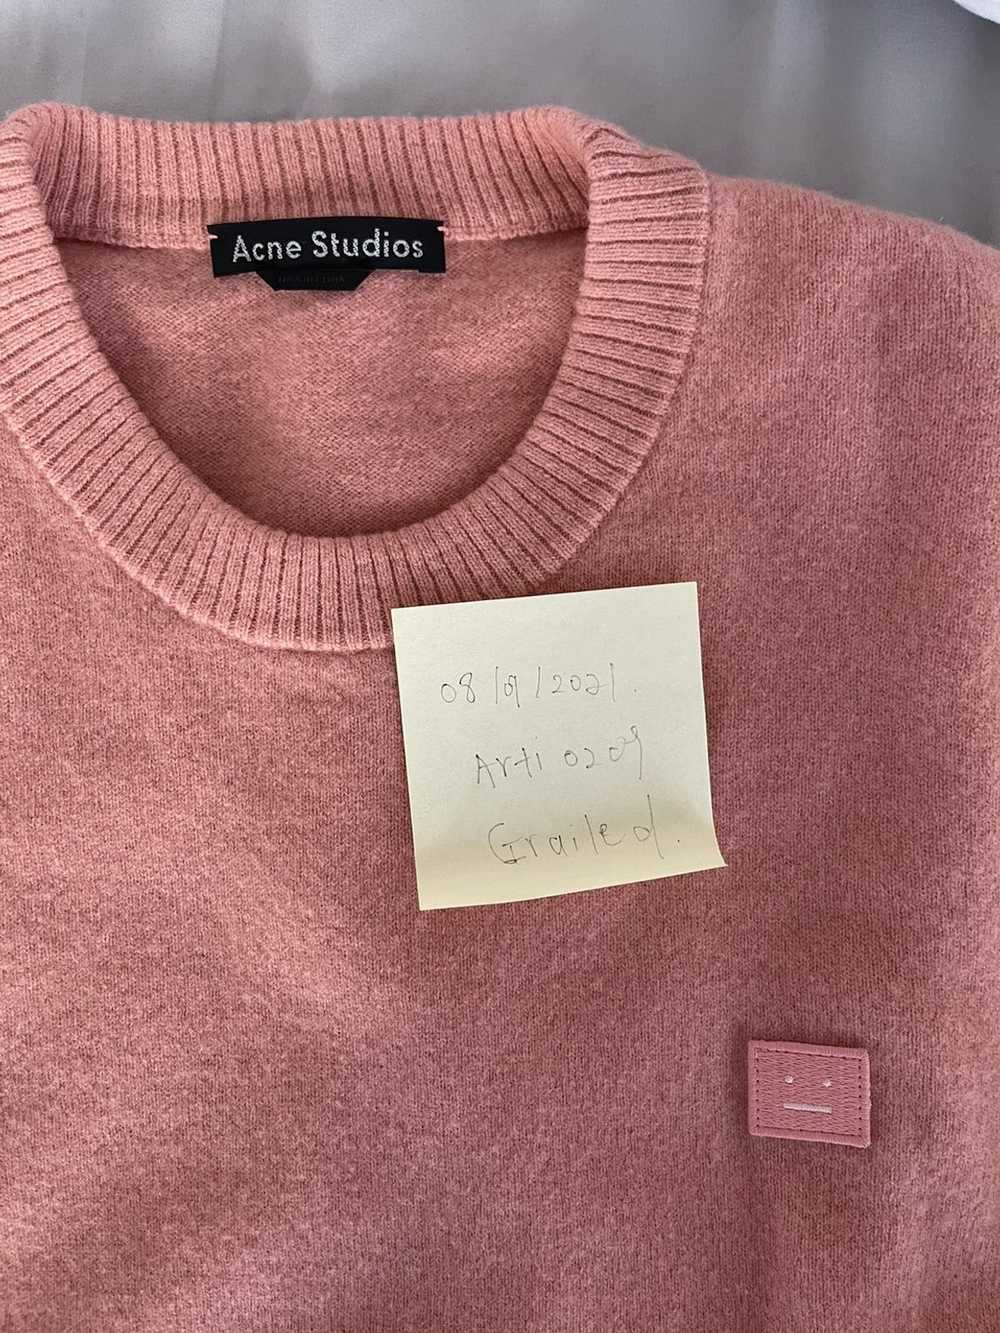 Acne Studios Acne Atudios sweatshirt unisex - image 7